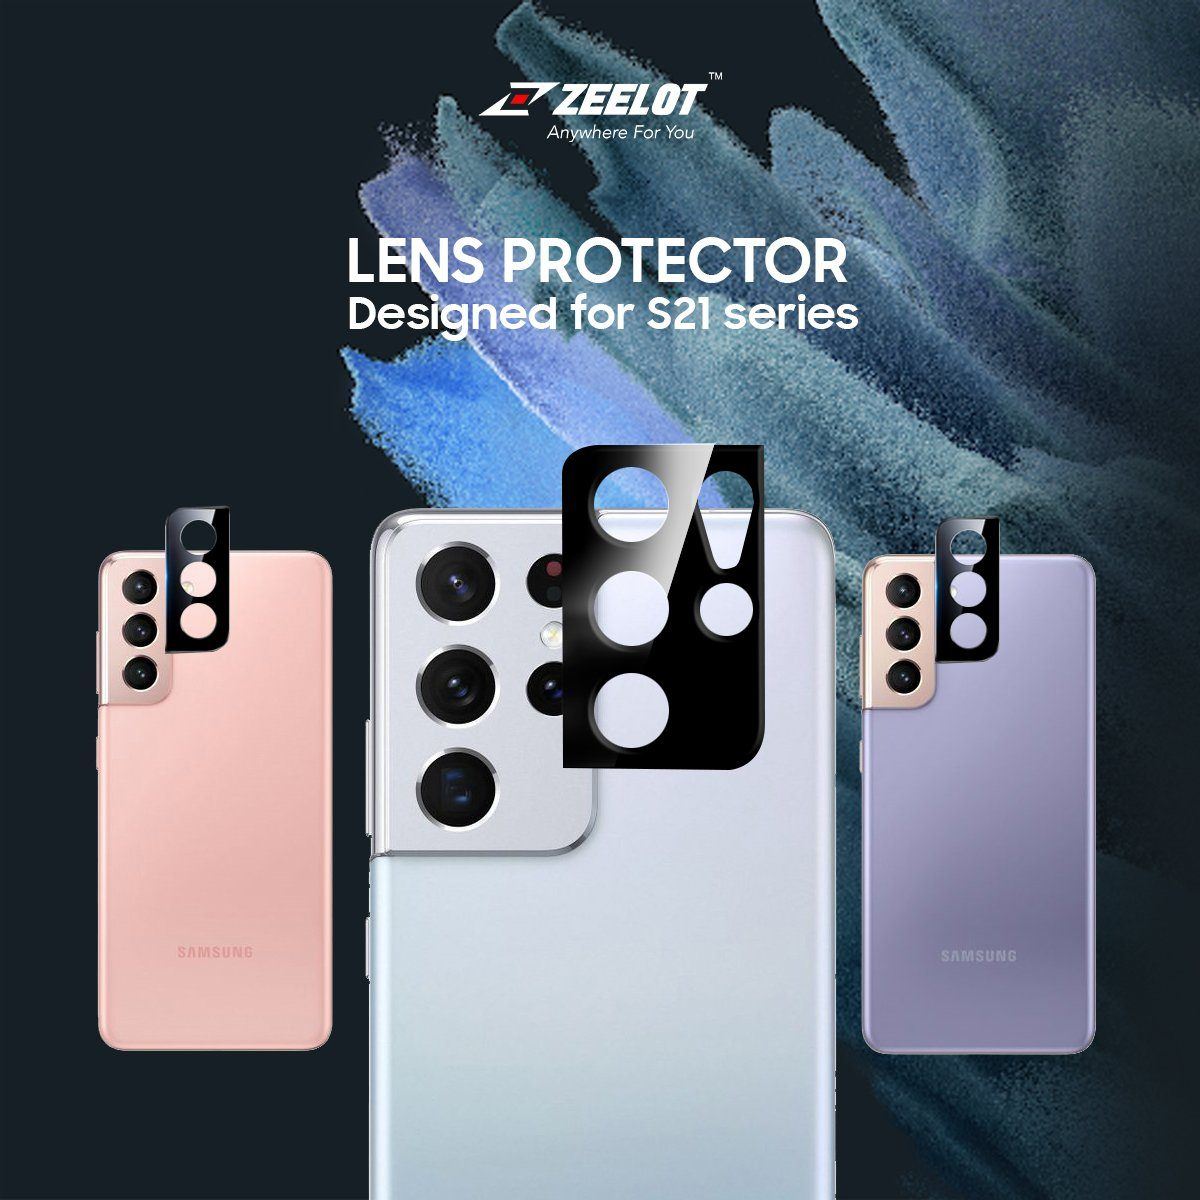 ZEELOT Samsung Galaxy S21 Lens Protector, Black S21 ZEELOT 